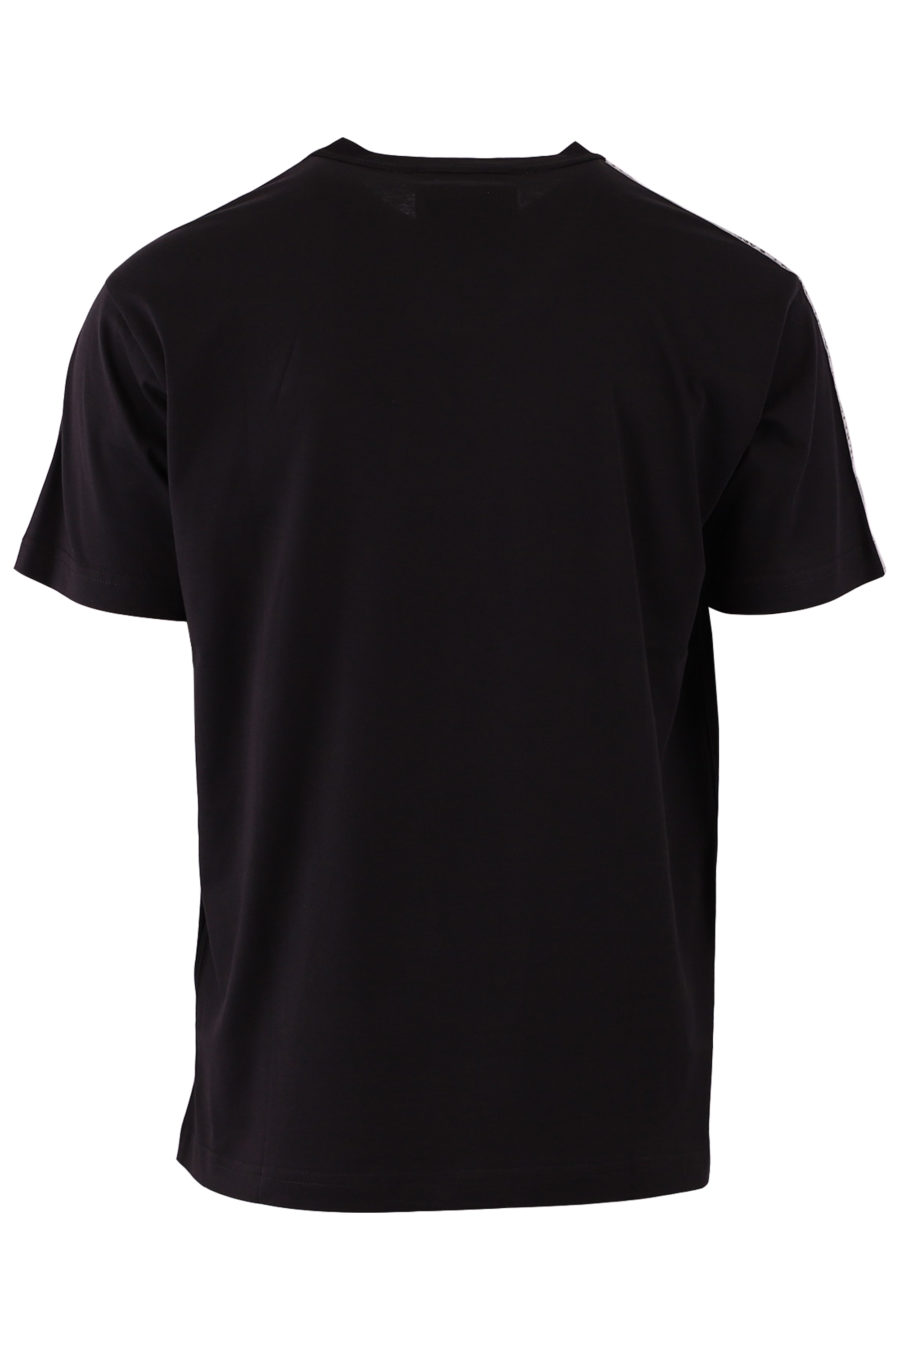 Schwarzes T-Shirt mit gestreiftem Logo - 3bcb71da681d4e595a5a5a1a3dd4c22c573f57a255